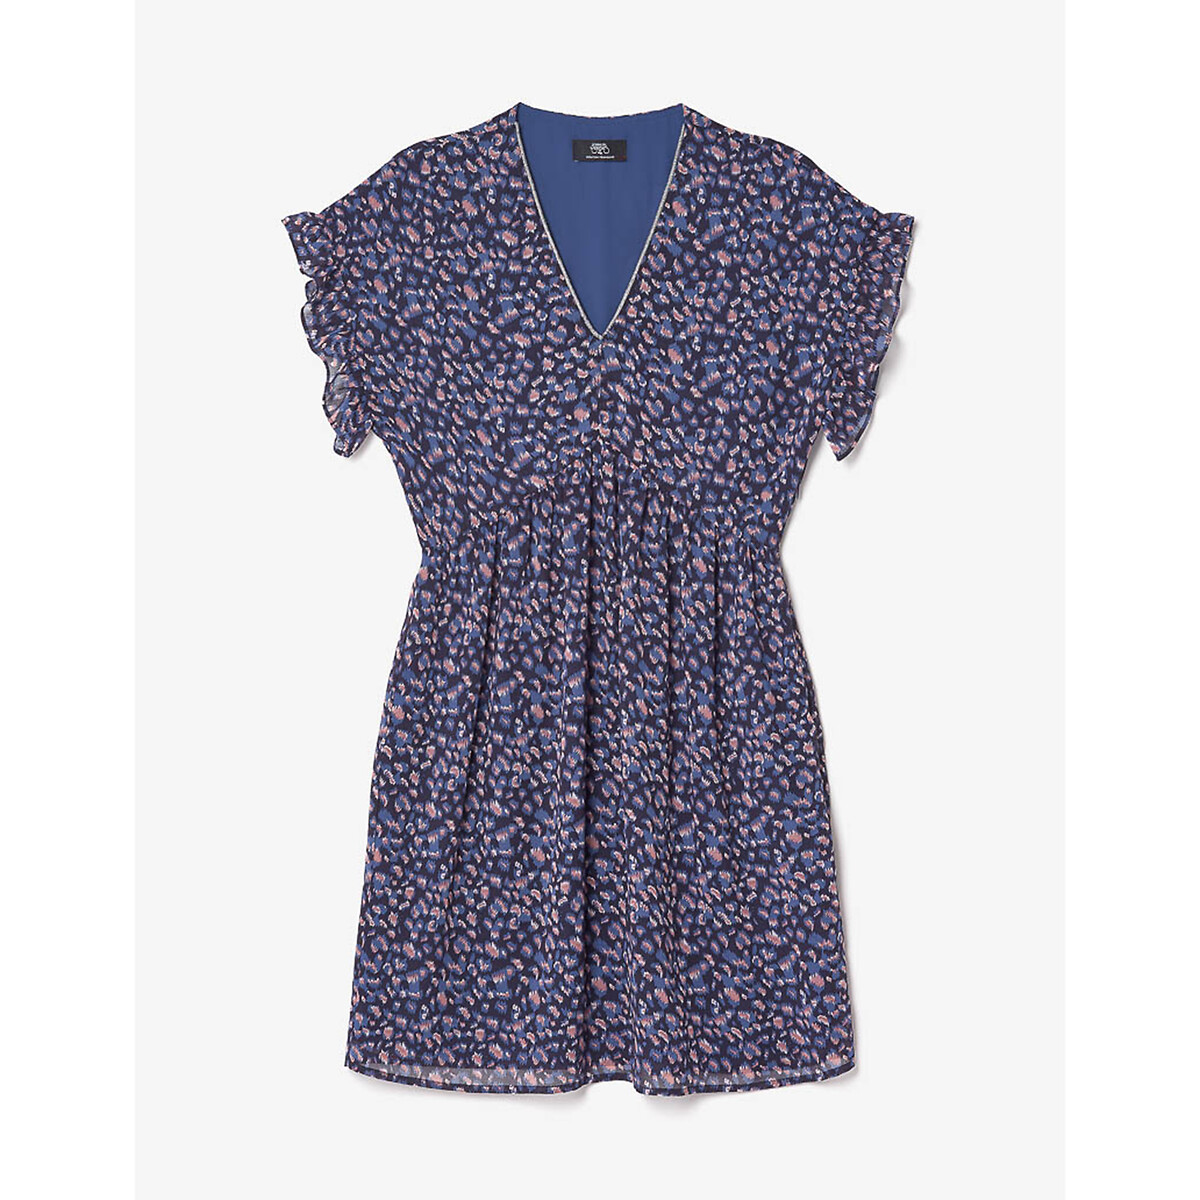 Платье С V-образным вырезом короткие рукава с принтом XL синий LaRedoute, размер XL - фото 3